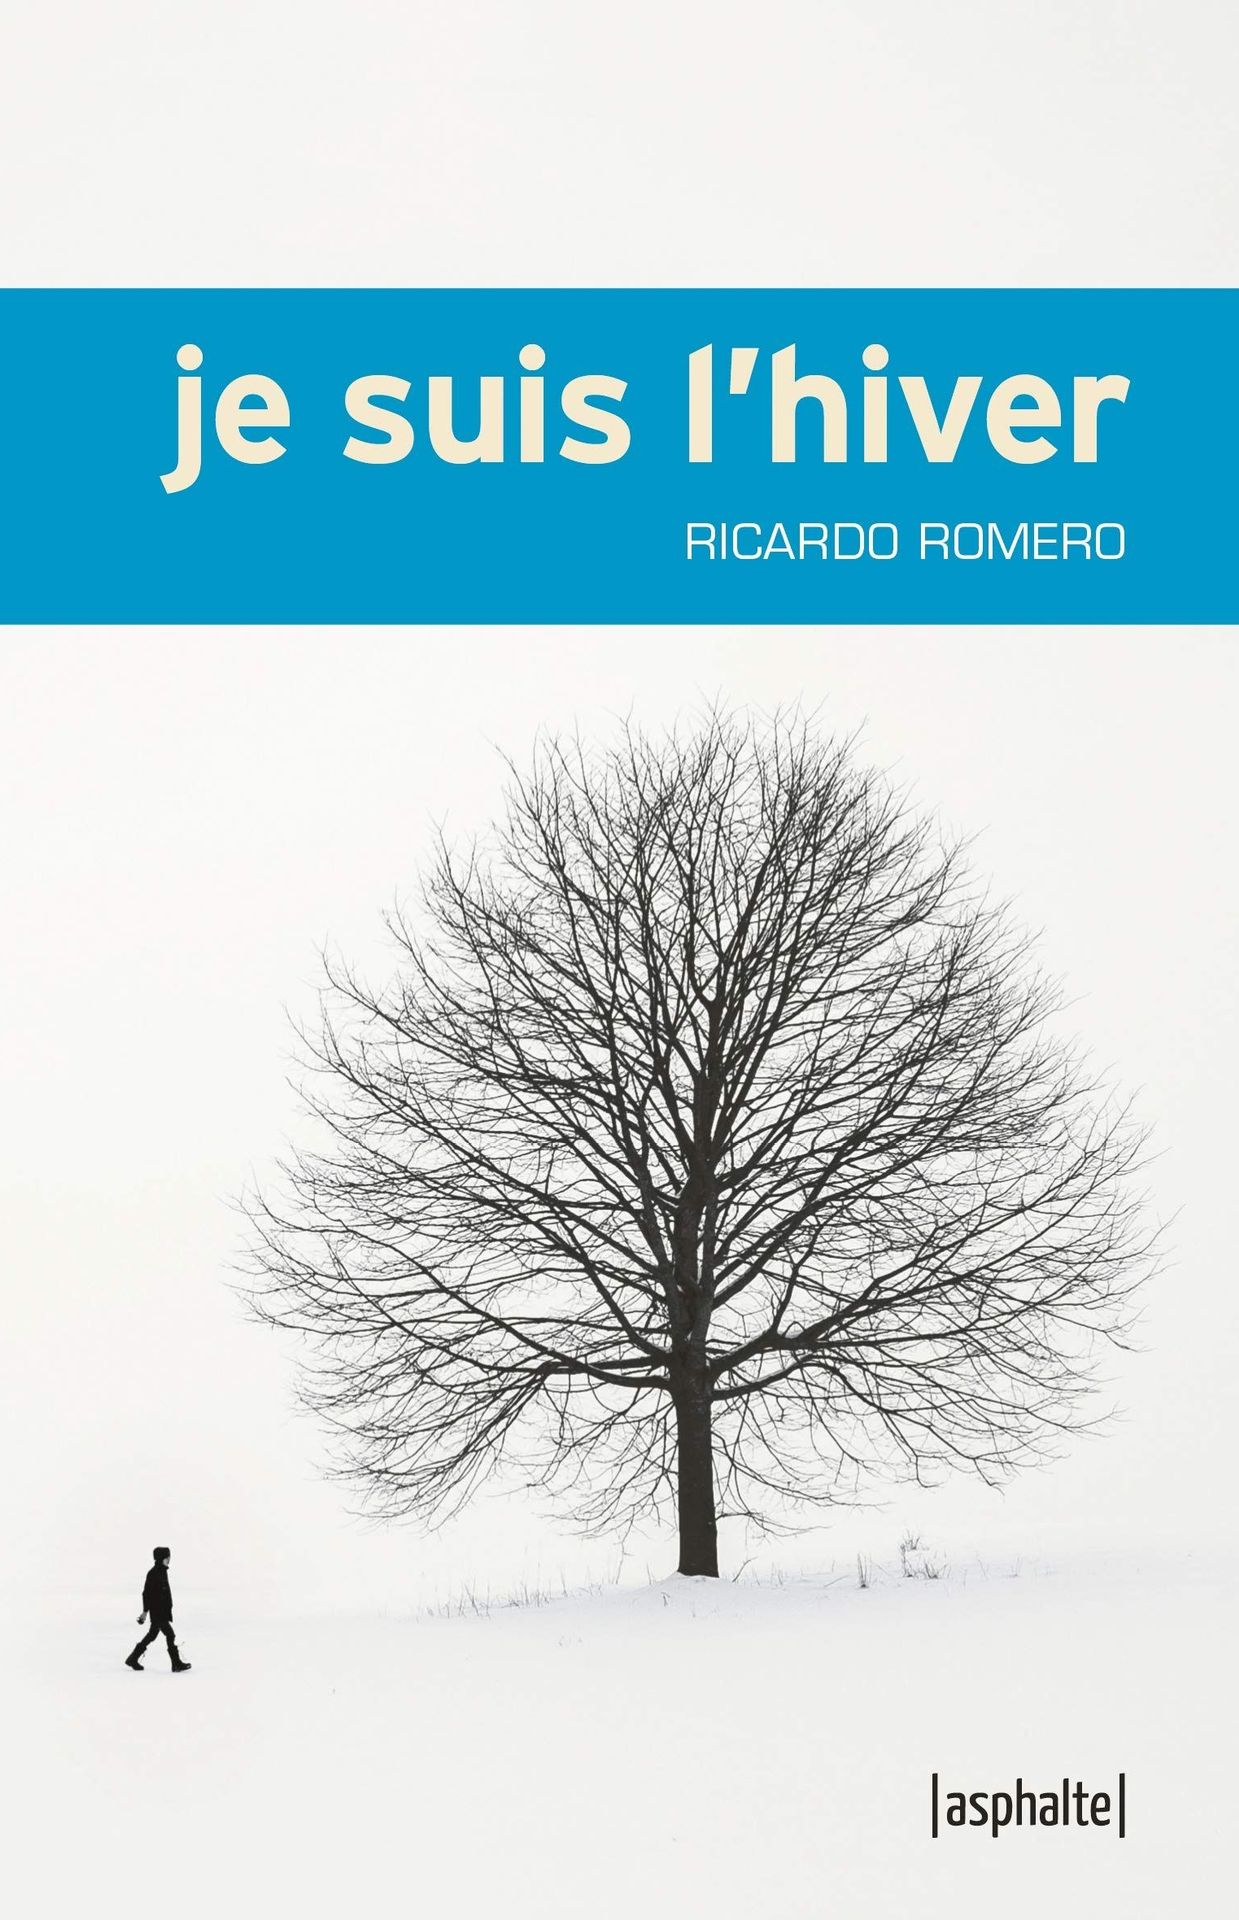 Couverture de "Je suis l'hiver" de Ricardo Romero (Asphalte)